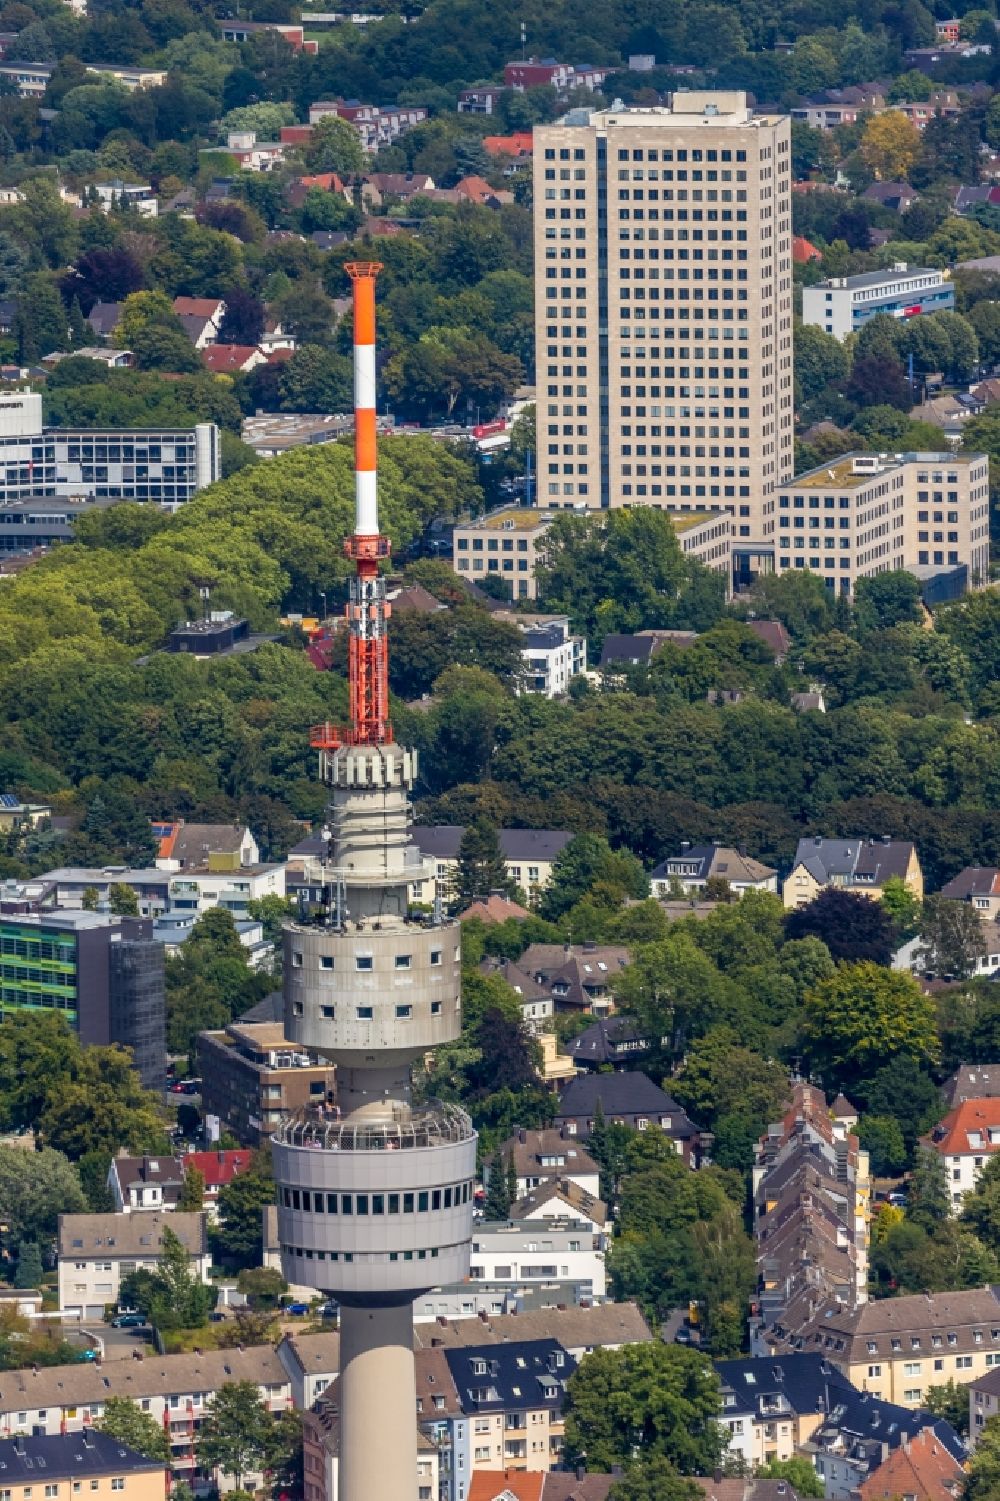 Luftbild Dortmund - Fernmeldeturm und Fernsehturm Florianturm in Dortmund im Bundesland Nordrhein-Westfalen, Deutschland